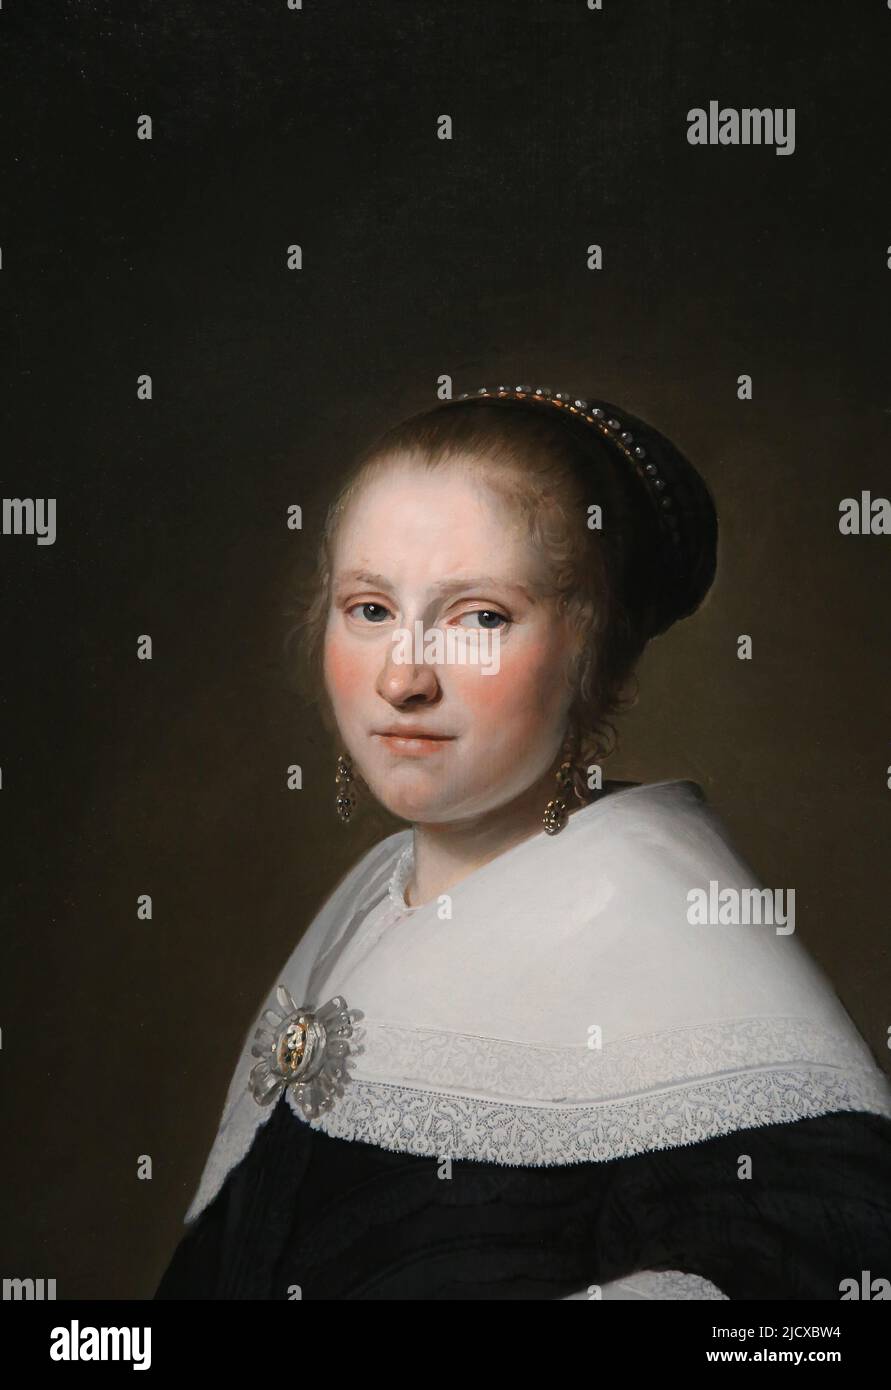 Porträt von Maria van Strijp von Johannes Cornelisz Verspronck (c. 1600-1662). Öl auf Platte, 1652. Rijksmuseum. Amsterdam. Niederlande. Stockfoto